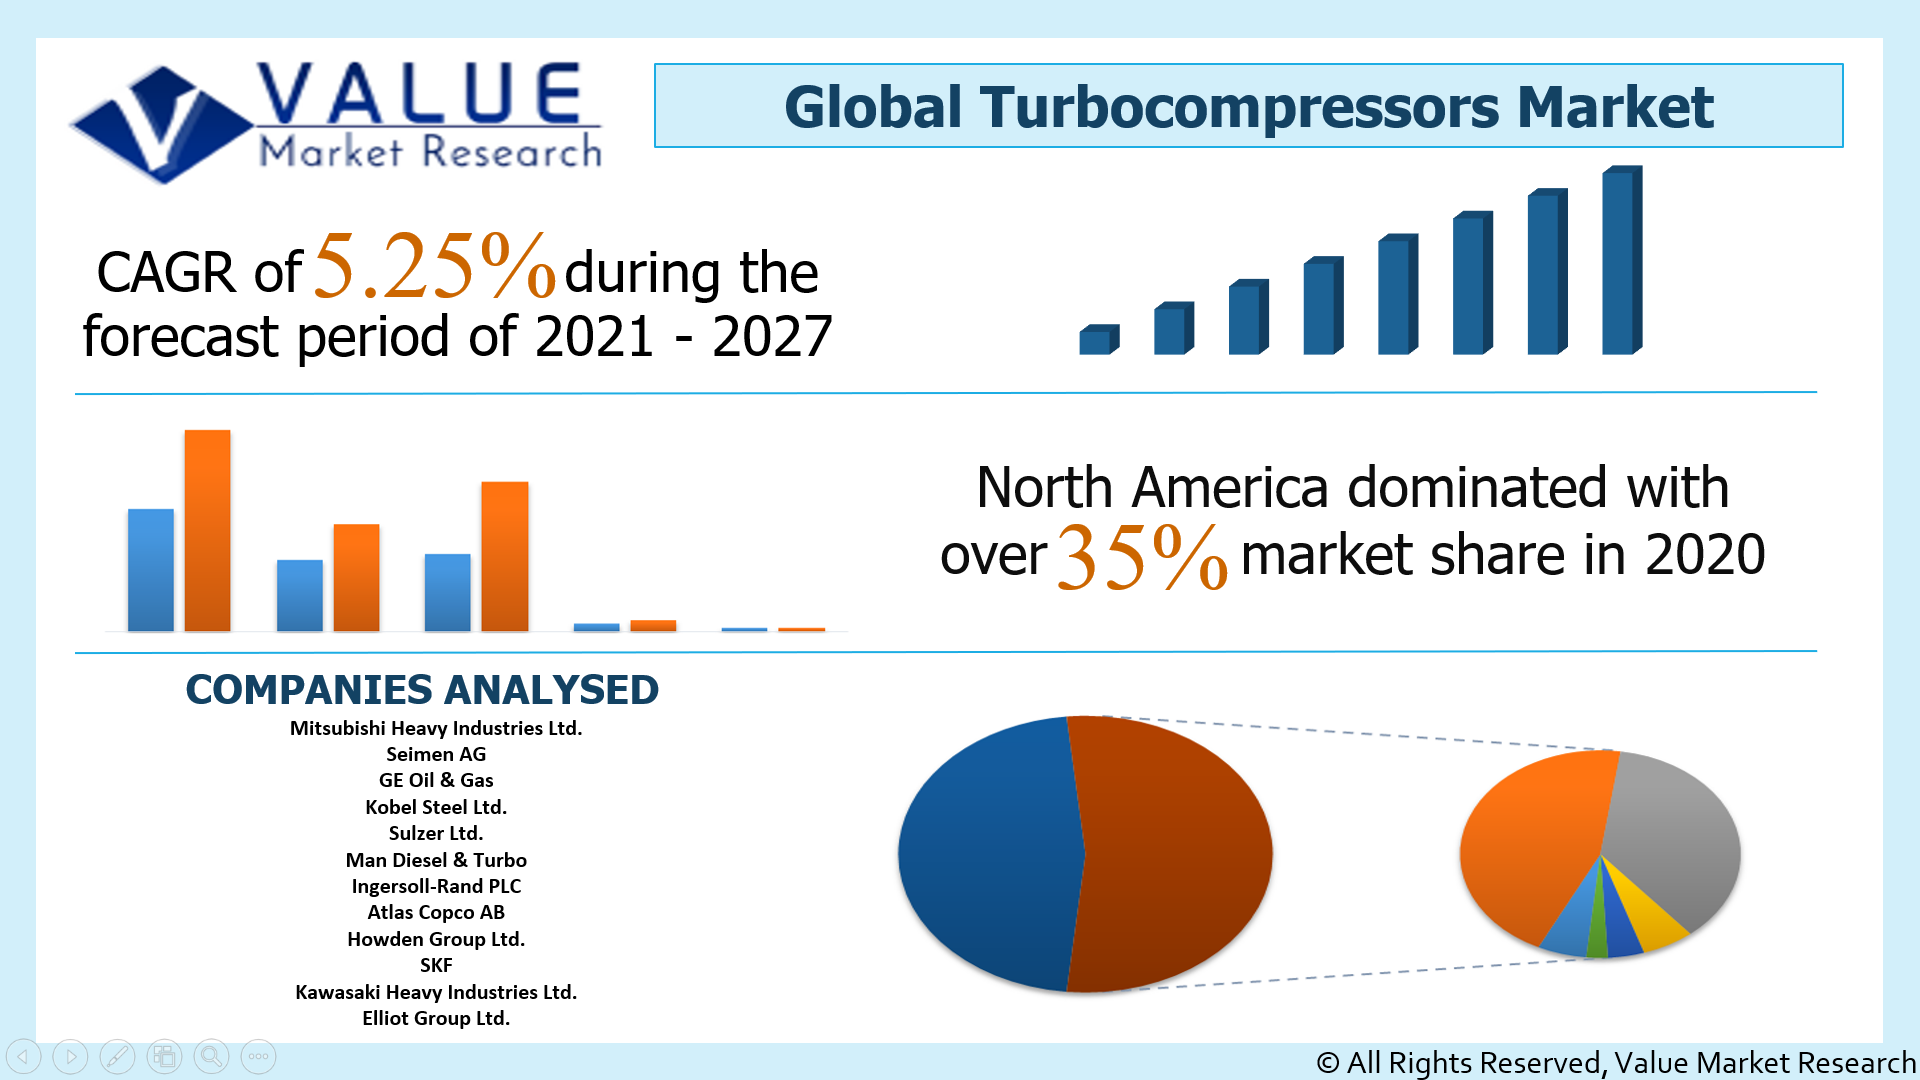 Global Turbocompressors Market Share